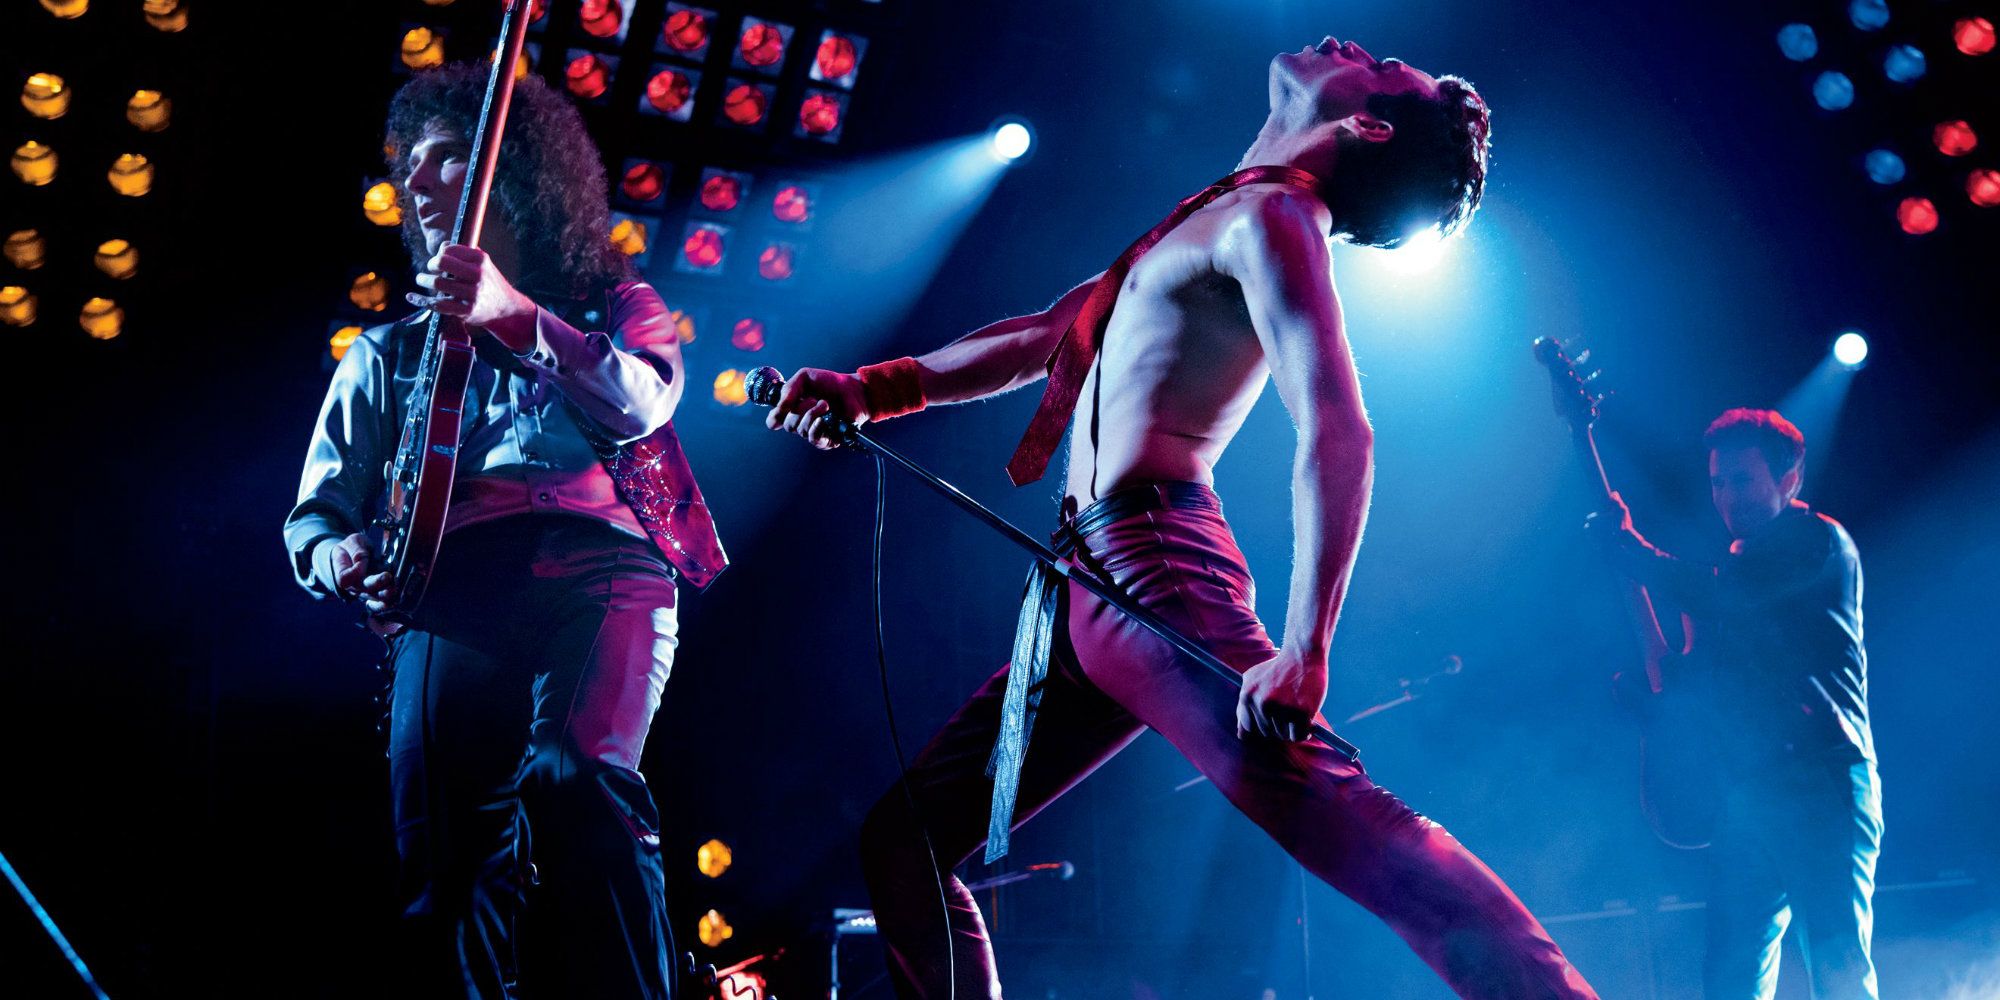 Bohemian Rhapsody Official Trailer: Rami Malek Wants to Break Free